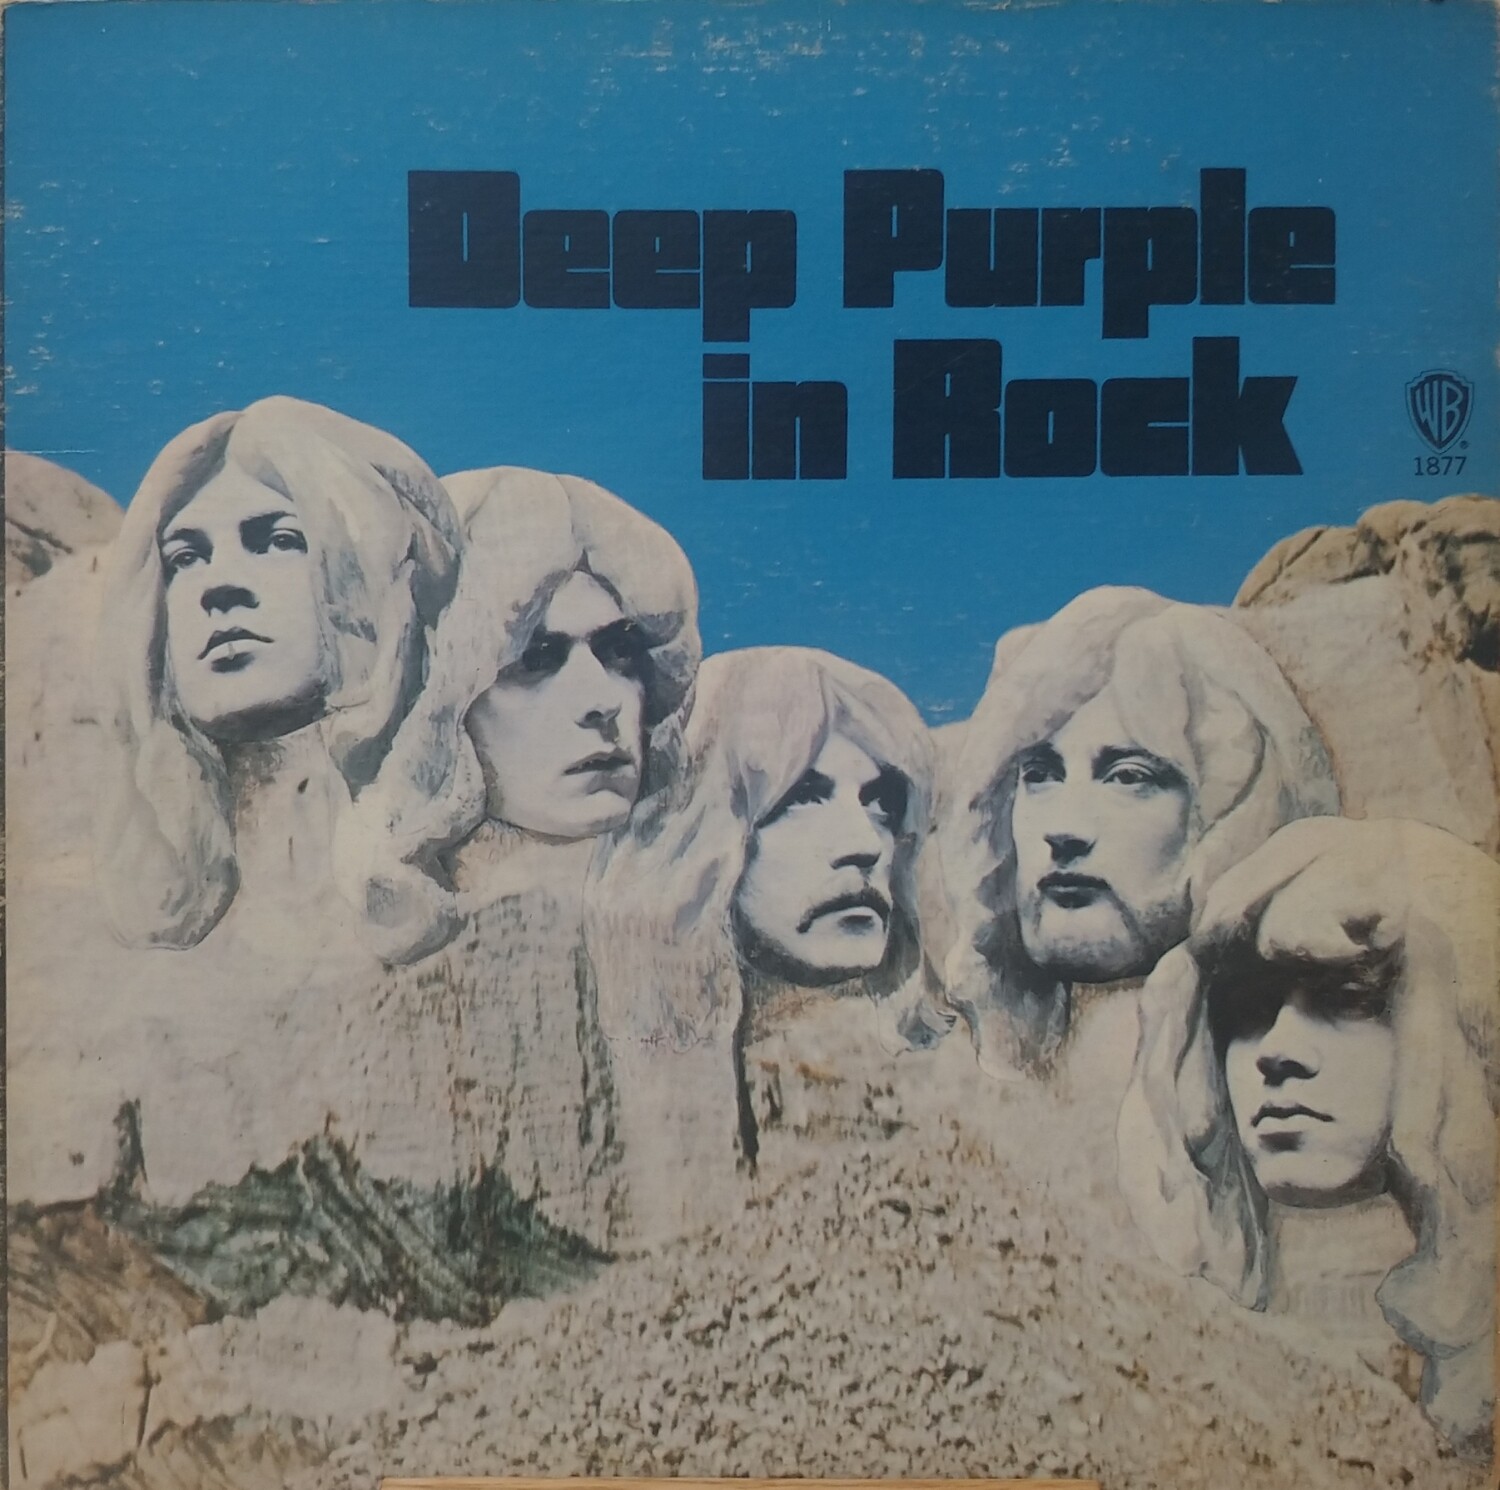 Deep Purple - In rock